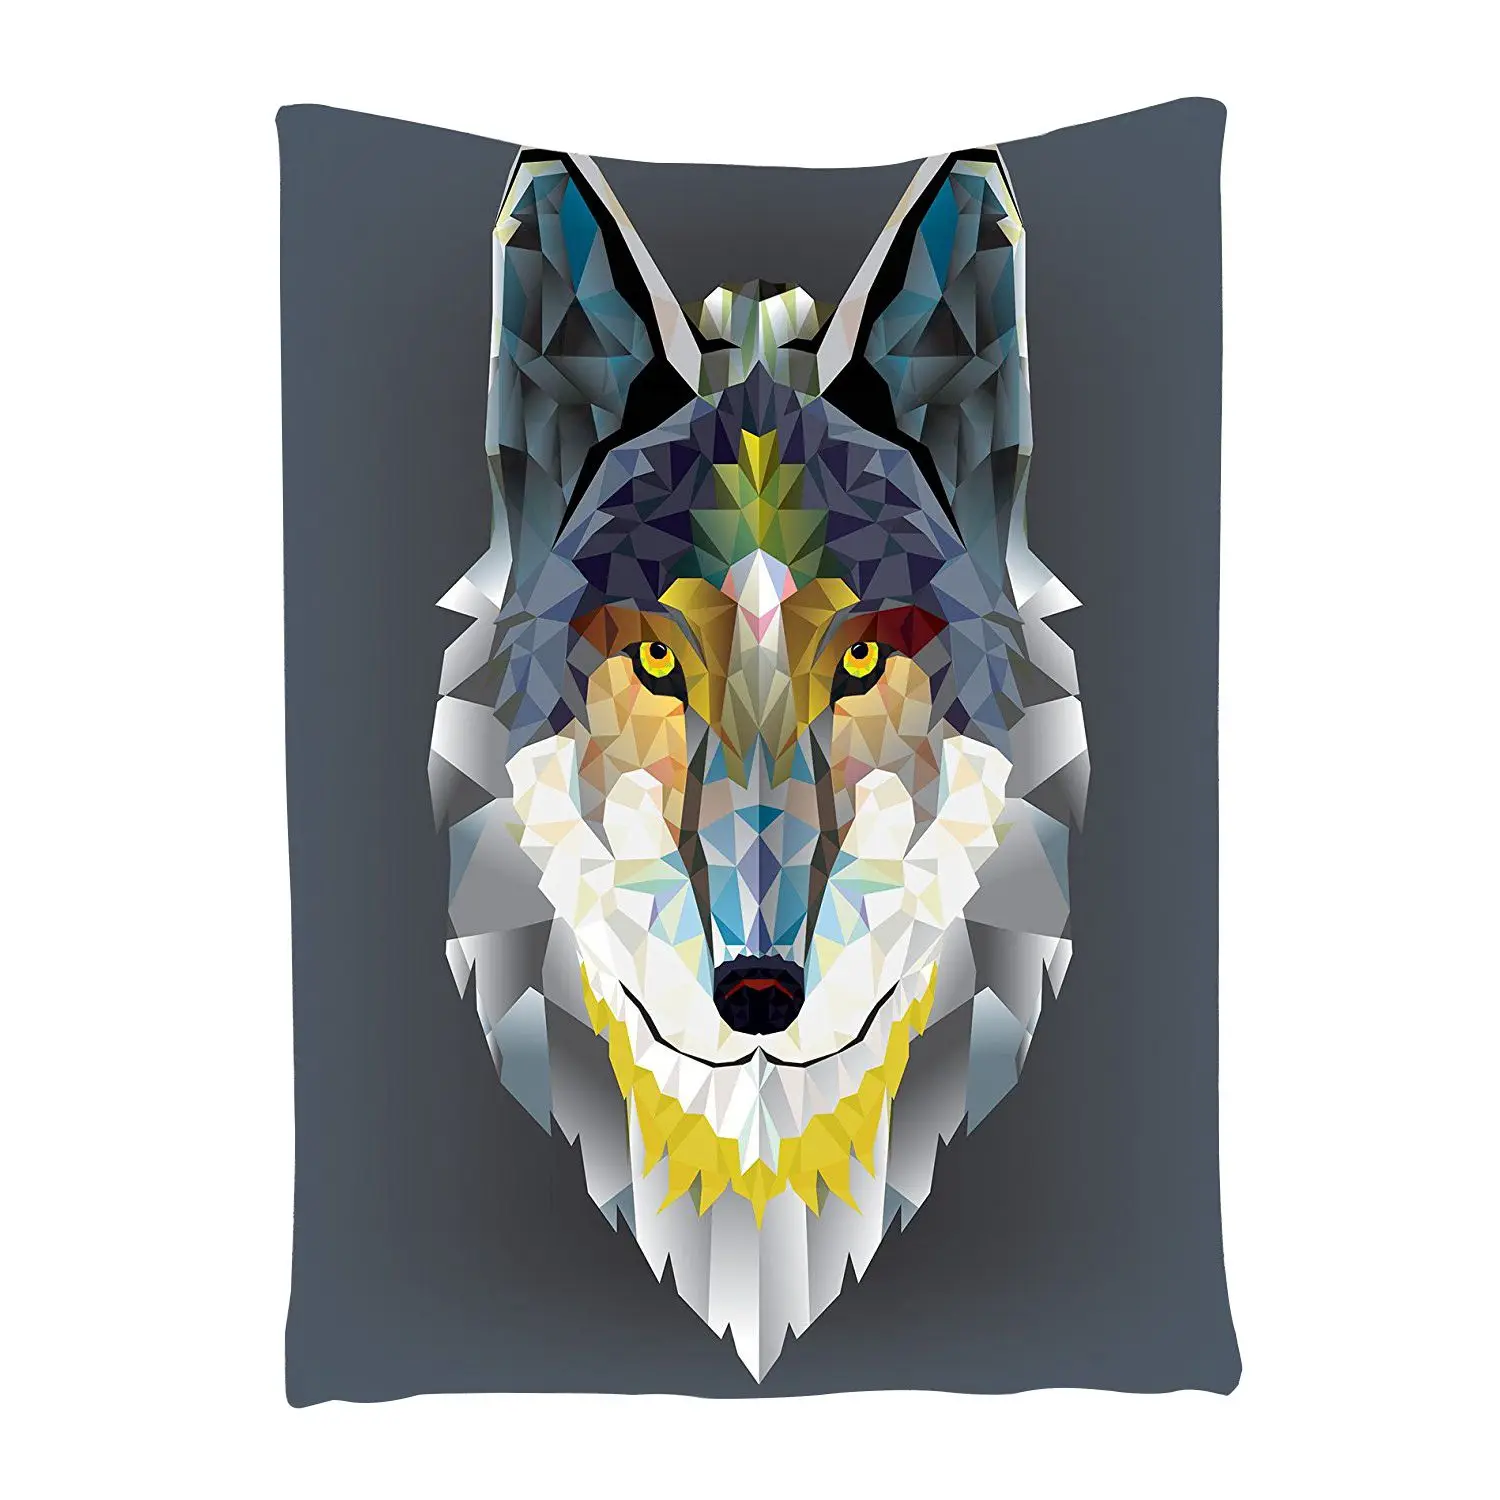 Serigala Abu abu Dekorasi Permadani Artistik Desain Grafis Coyote Binatang Hewan Geometris Cetak Bedroom Living Anak